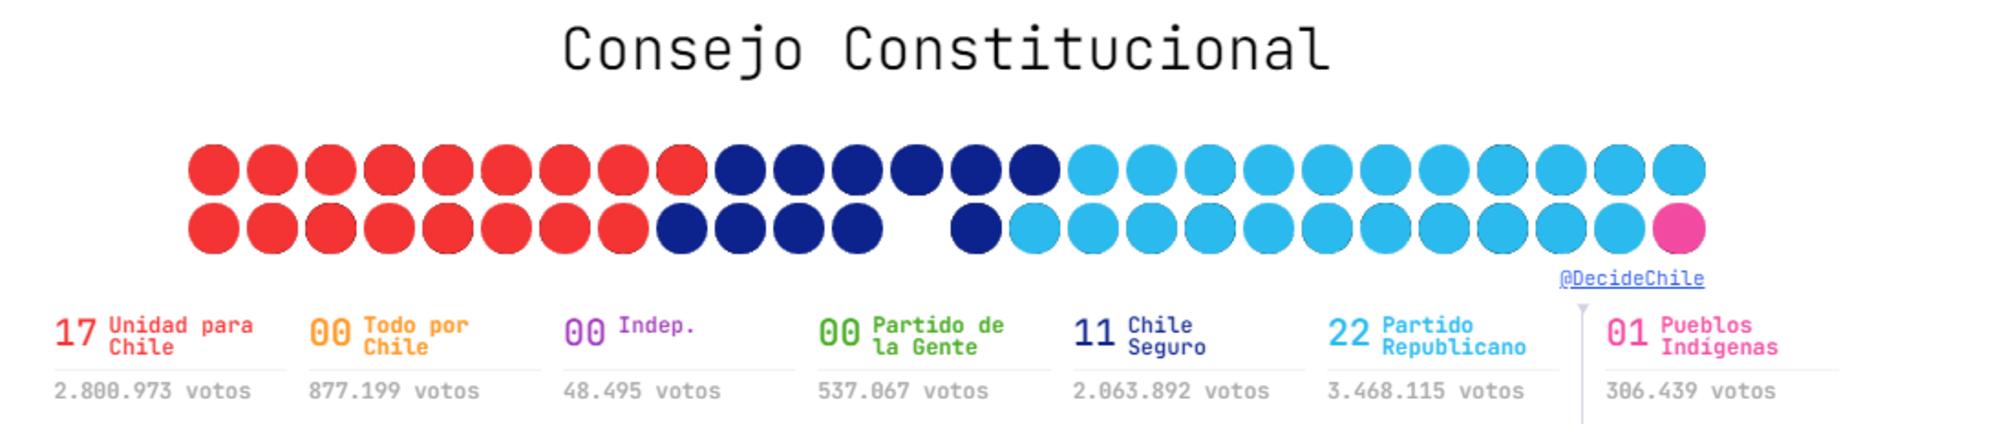 resultado Consejo Constitucional Chile